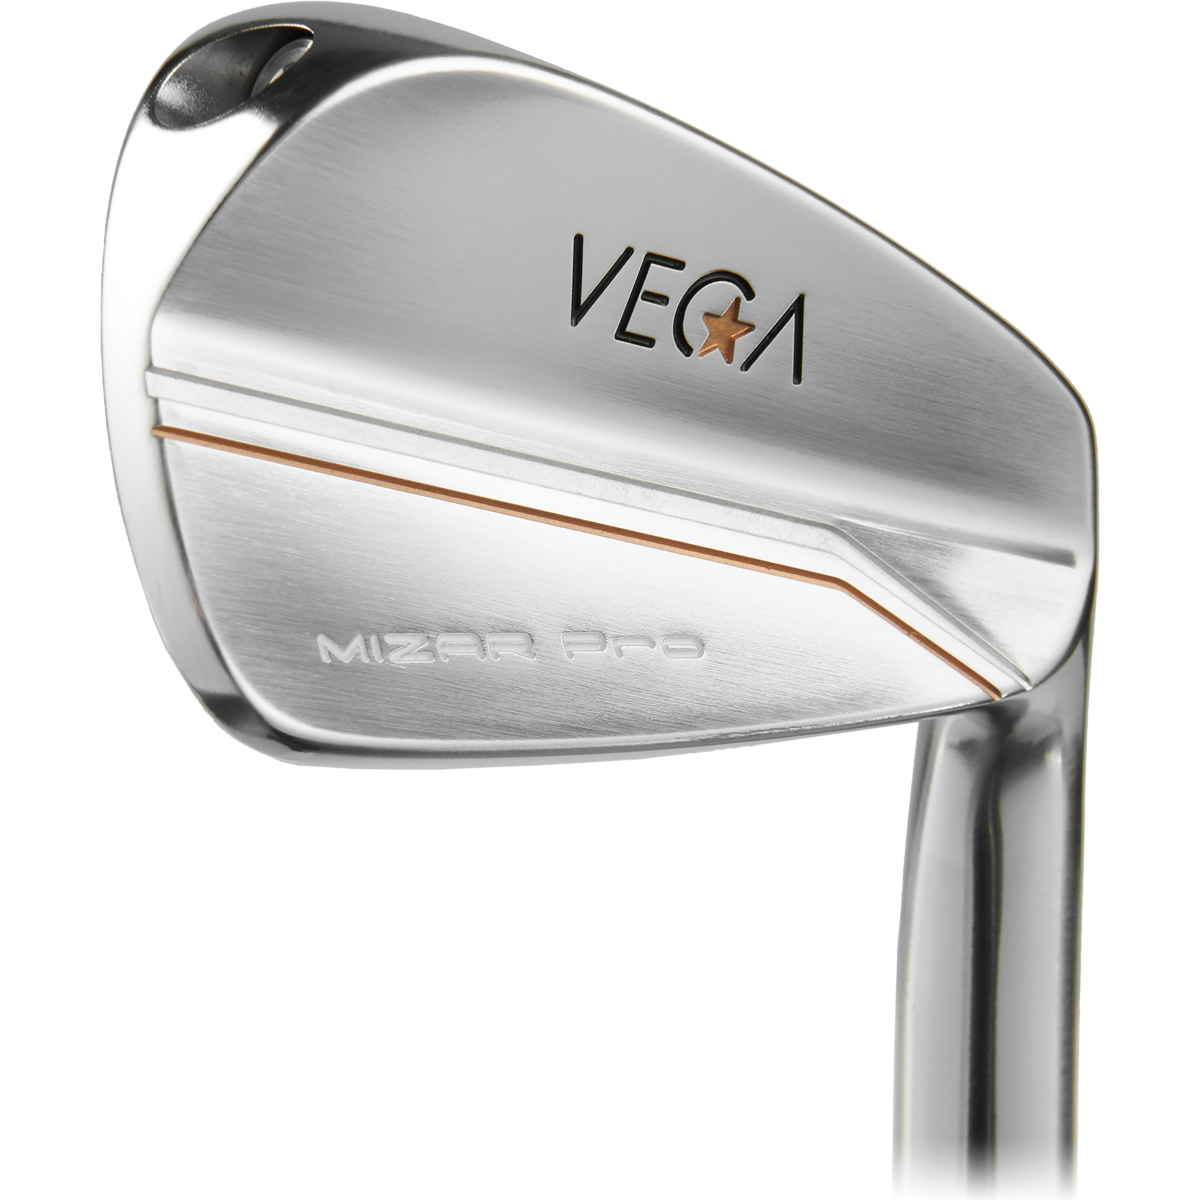 VEGA Custom Mizar Pro Irons